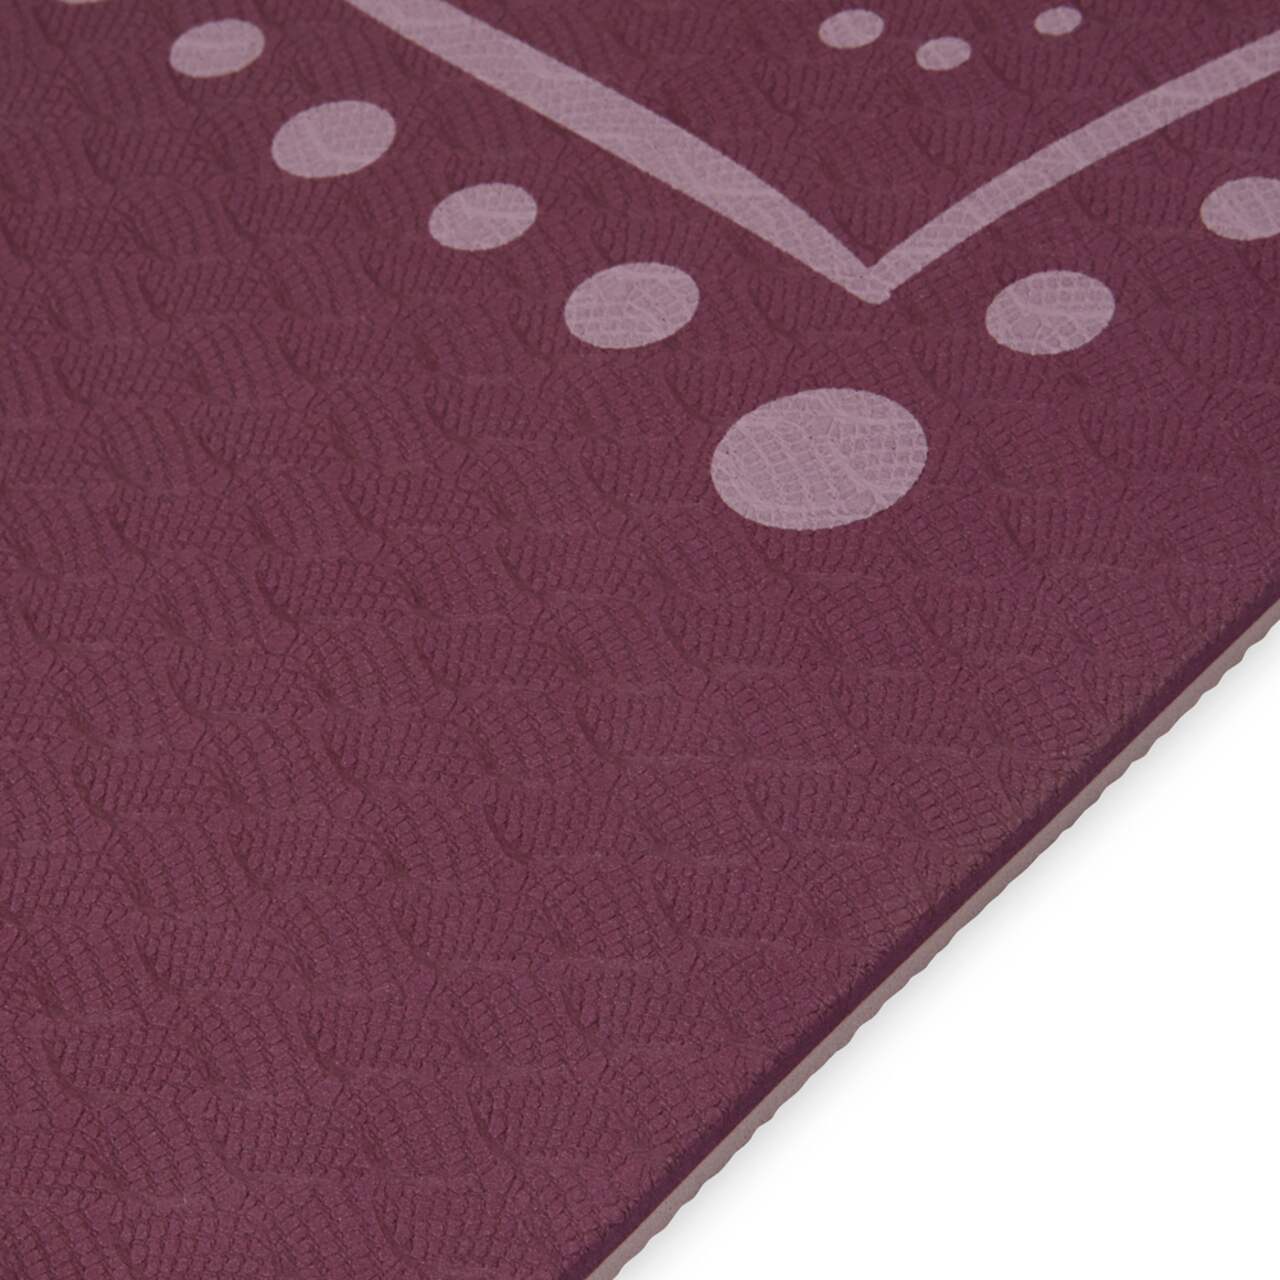 Buy Gaiam 6mm TPE Premium Printed Yoga Mat Blush at